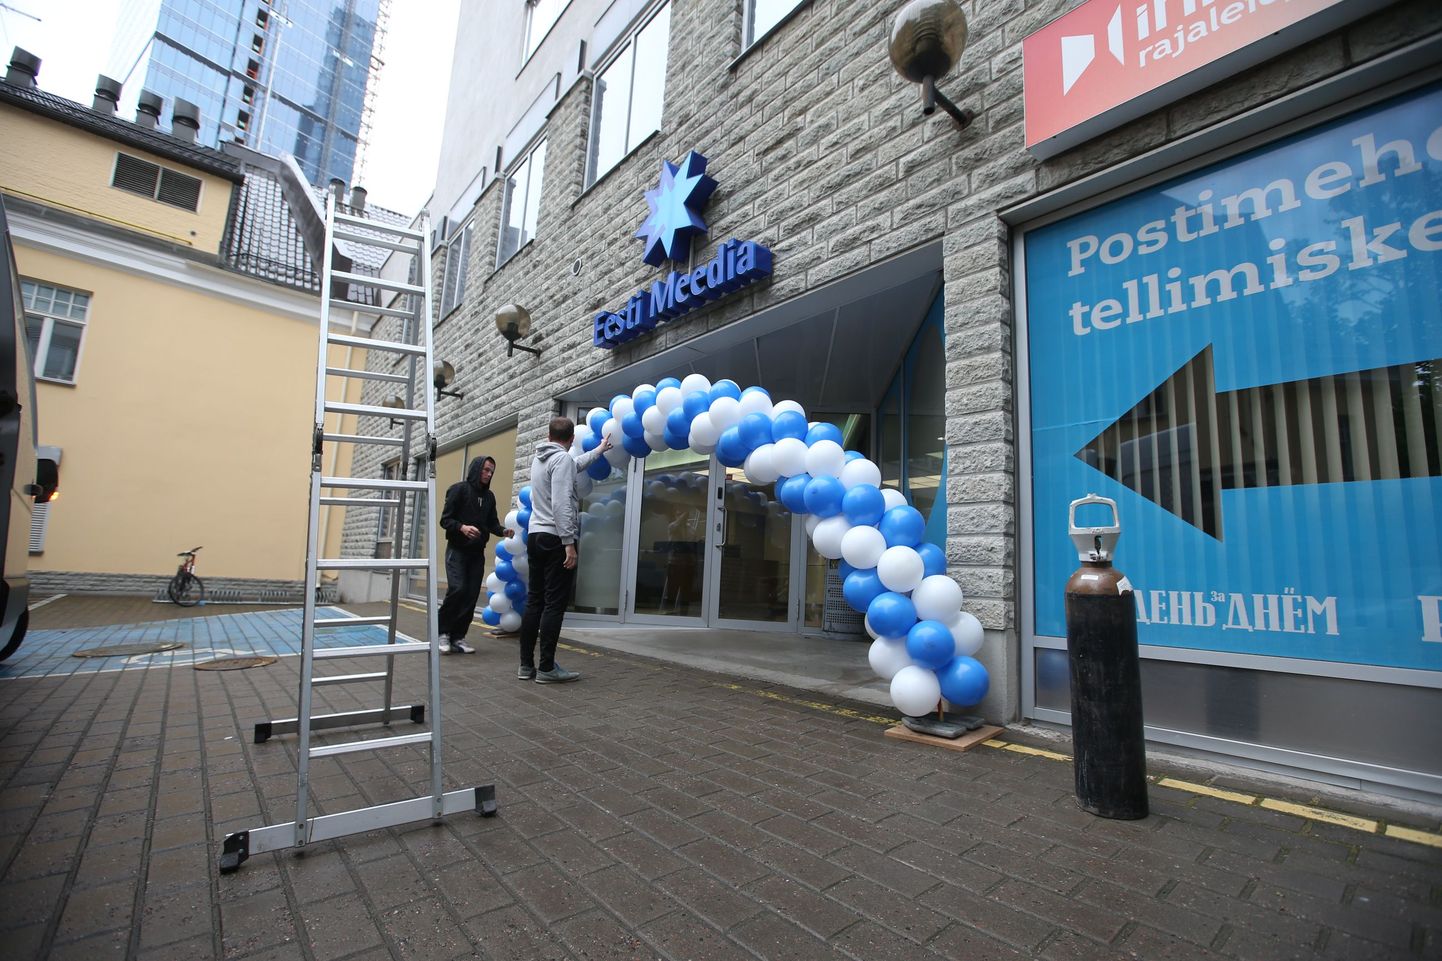 Õhupallid Postimehe sünnipäeva puhul Eesti Meedia maja peaukse ees.